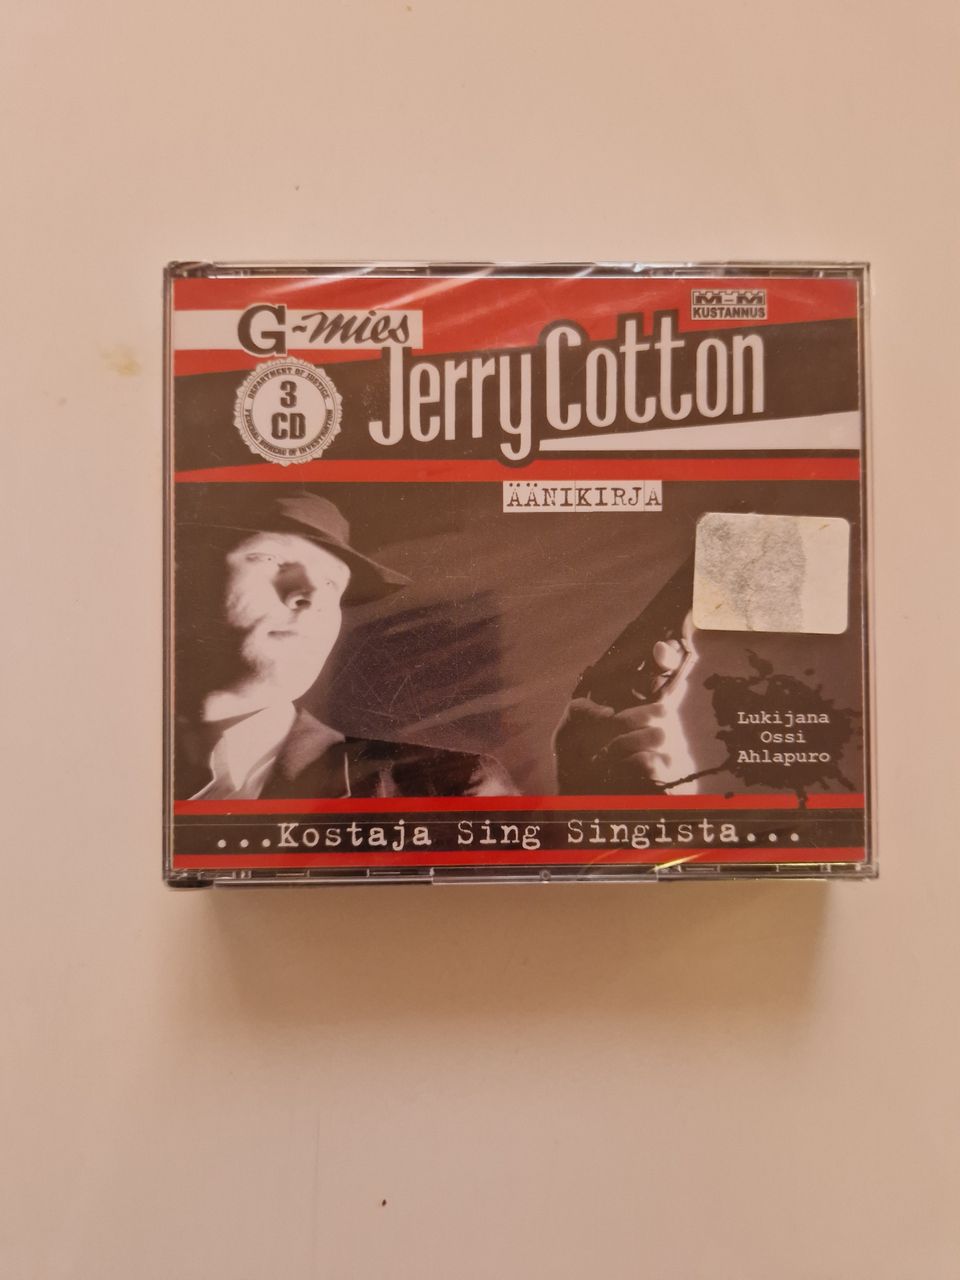 Jerry cotton äänikirja